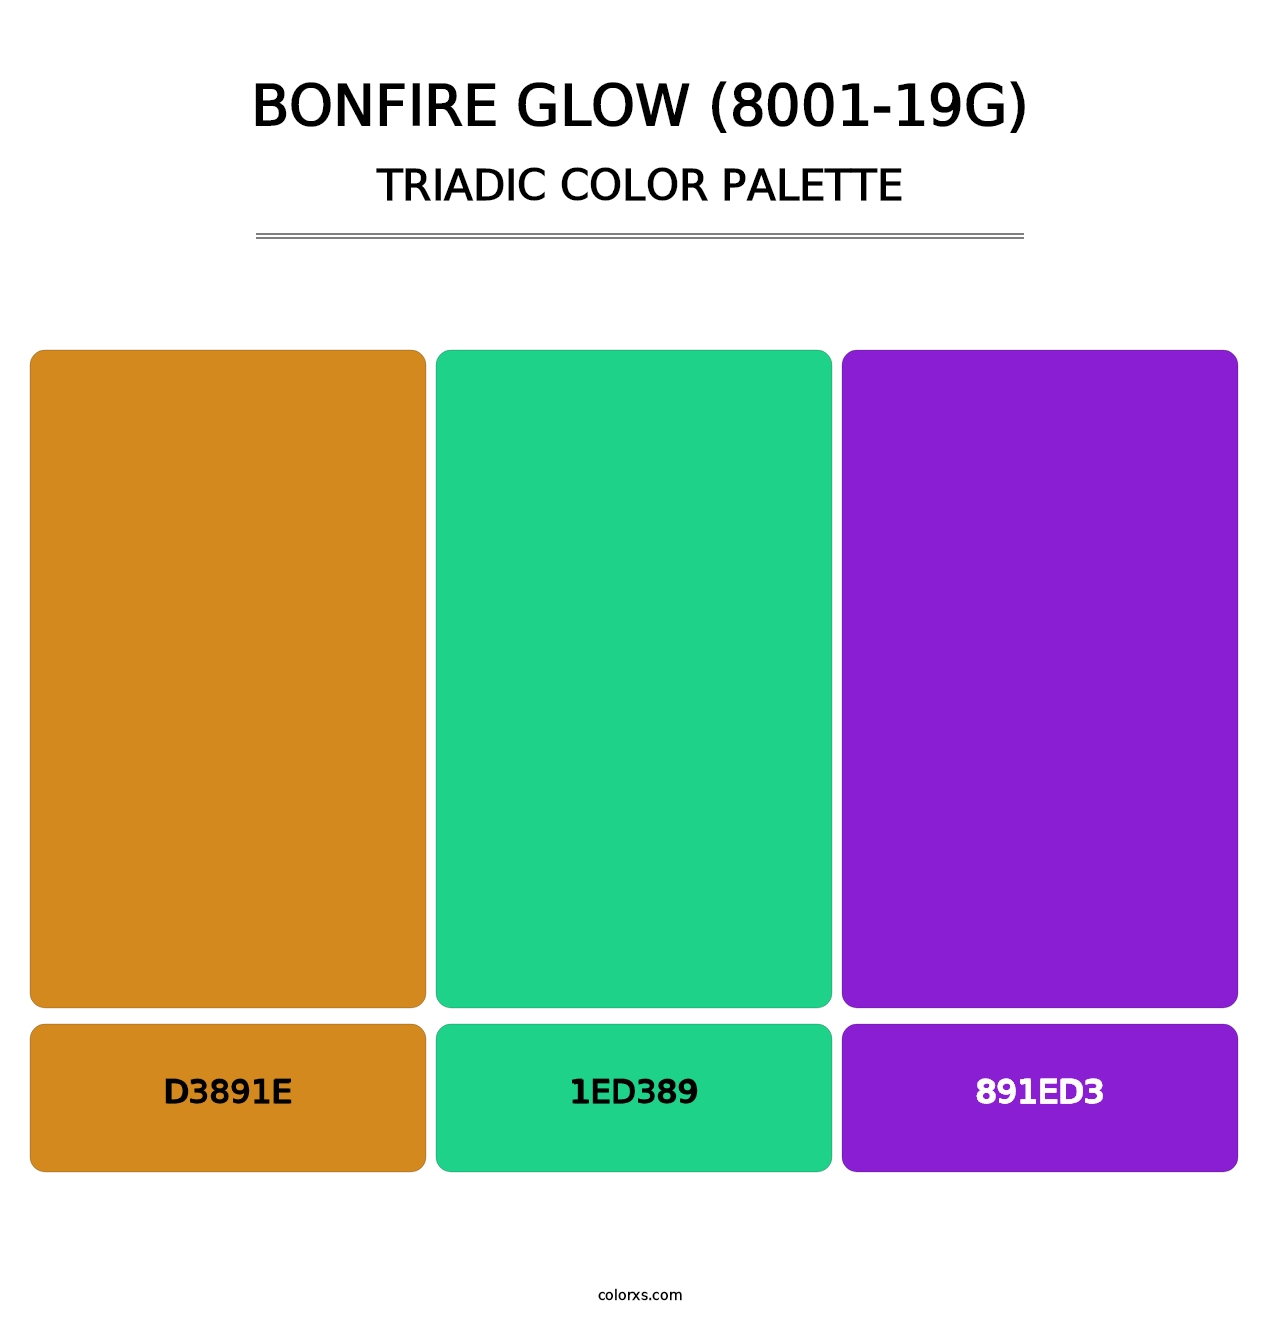 Bonfire Glow (8001-19G) - Triadic Color Palette